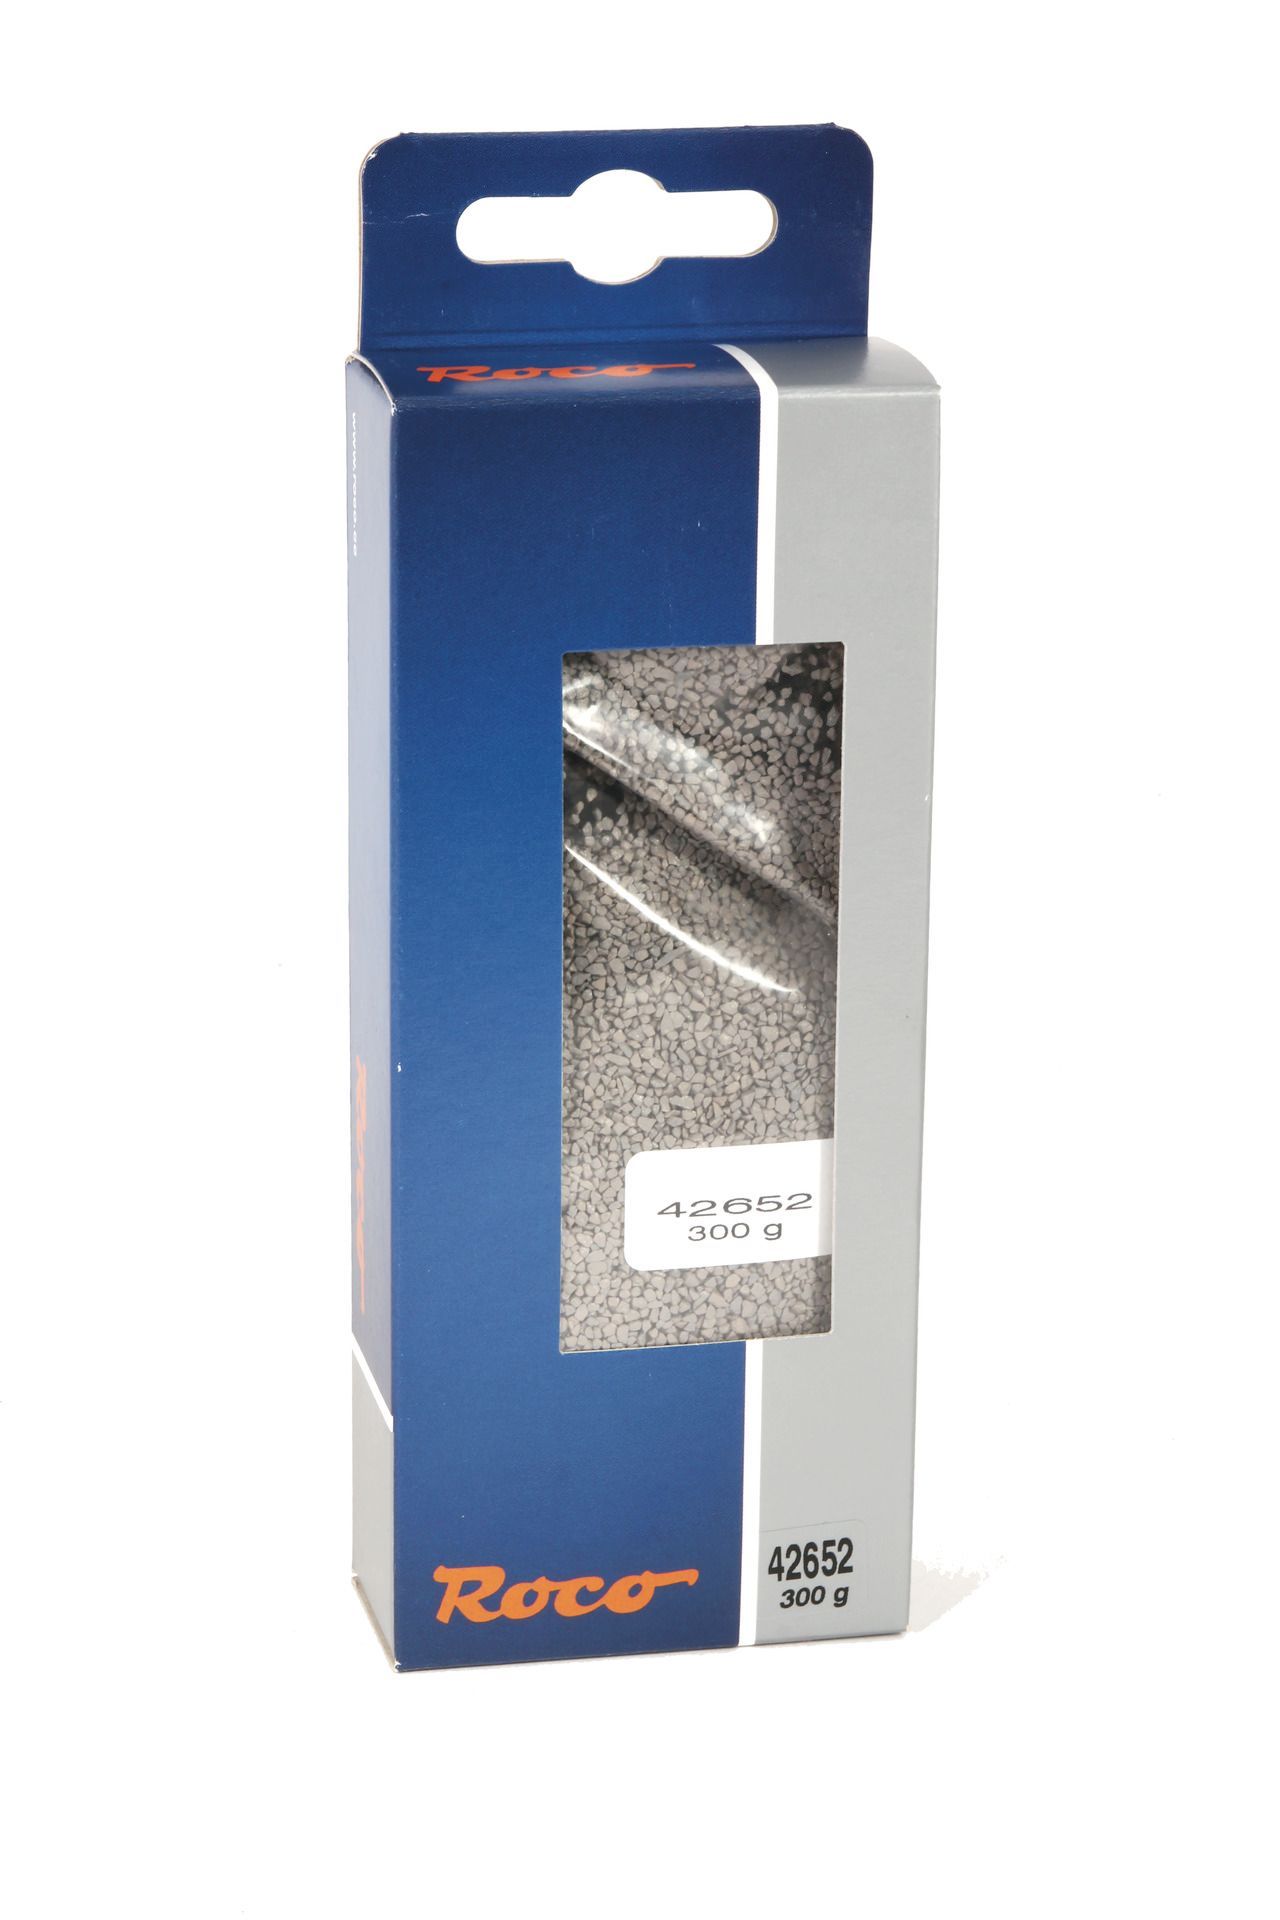 Roco 42652 - Gleisschotter 300 g passend zu Roco-Line H0/GL